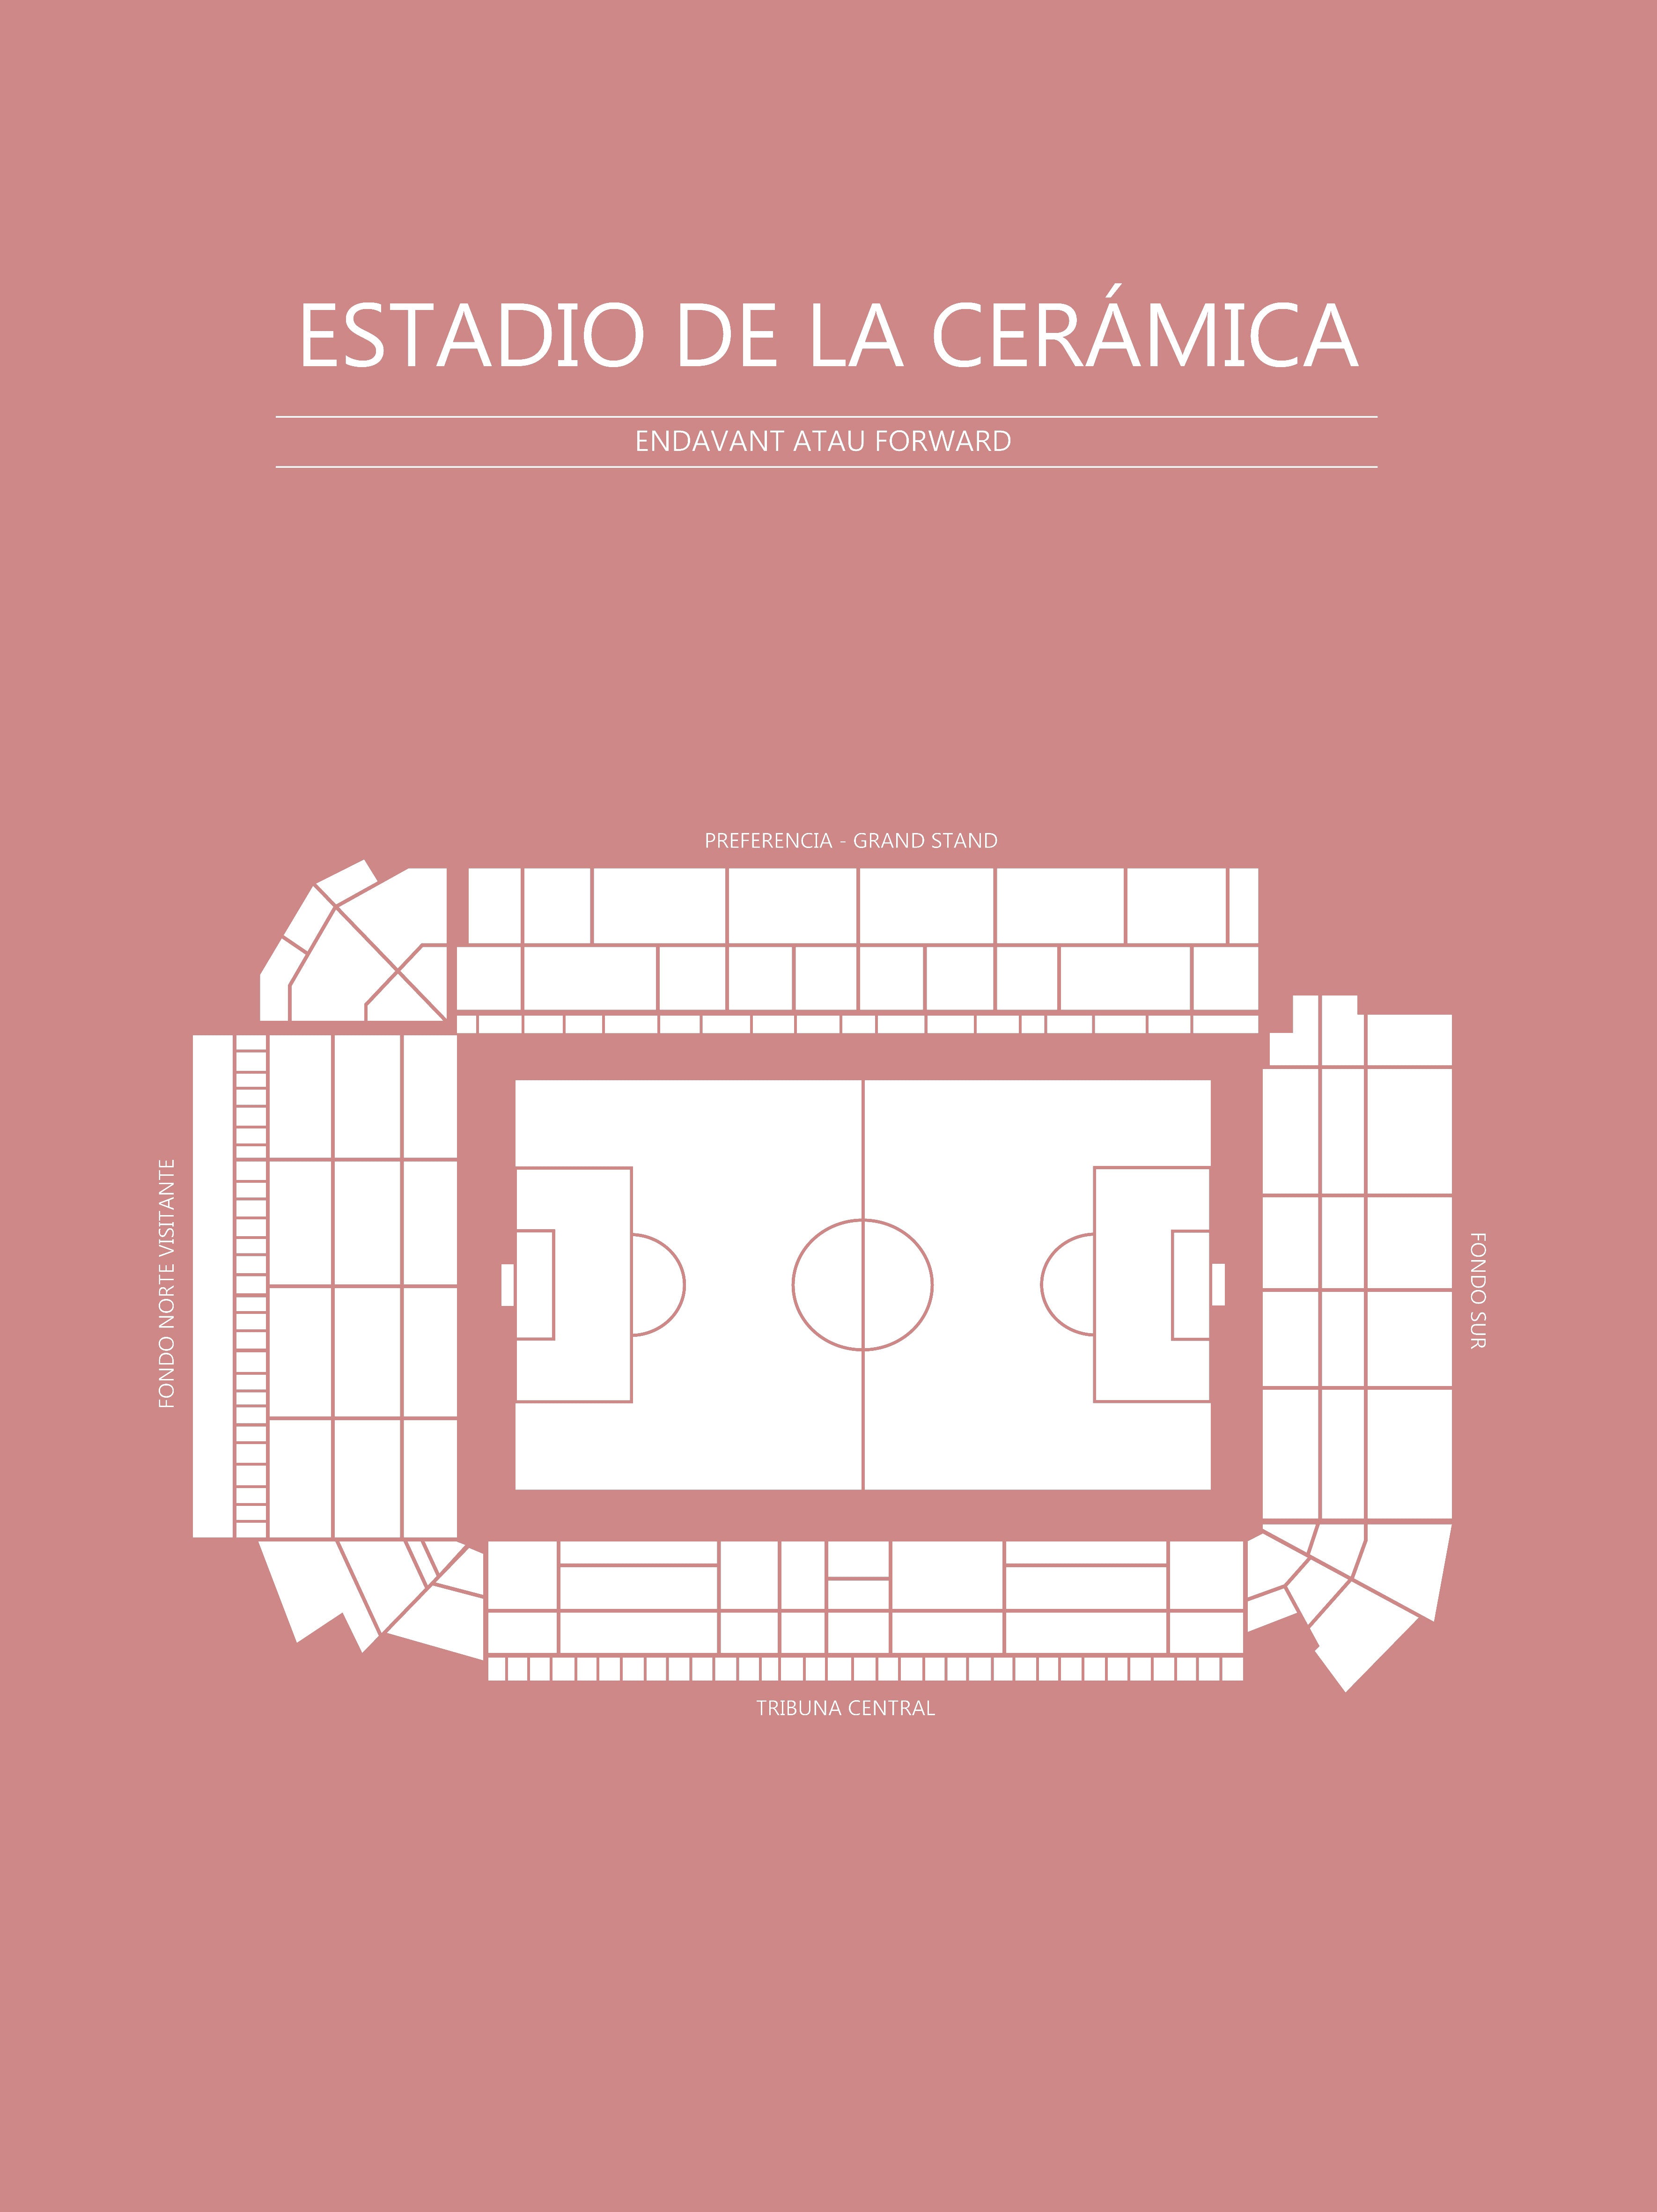 Fodbold Villareal Estadio de la Ceramica Blush